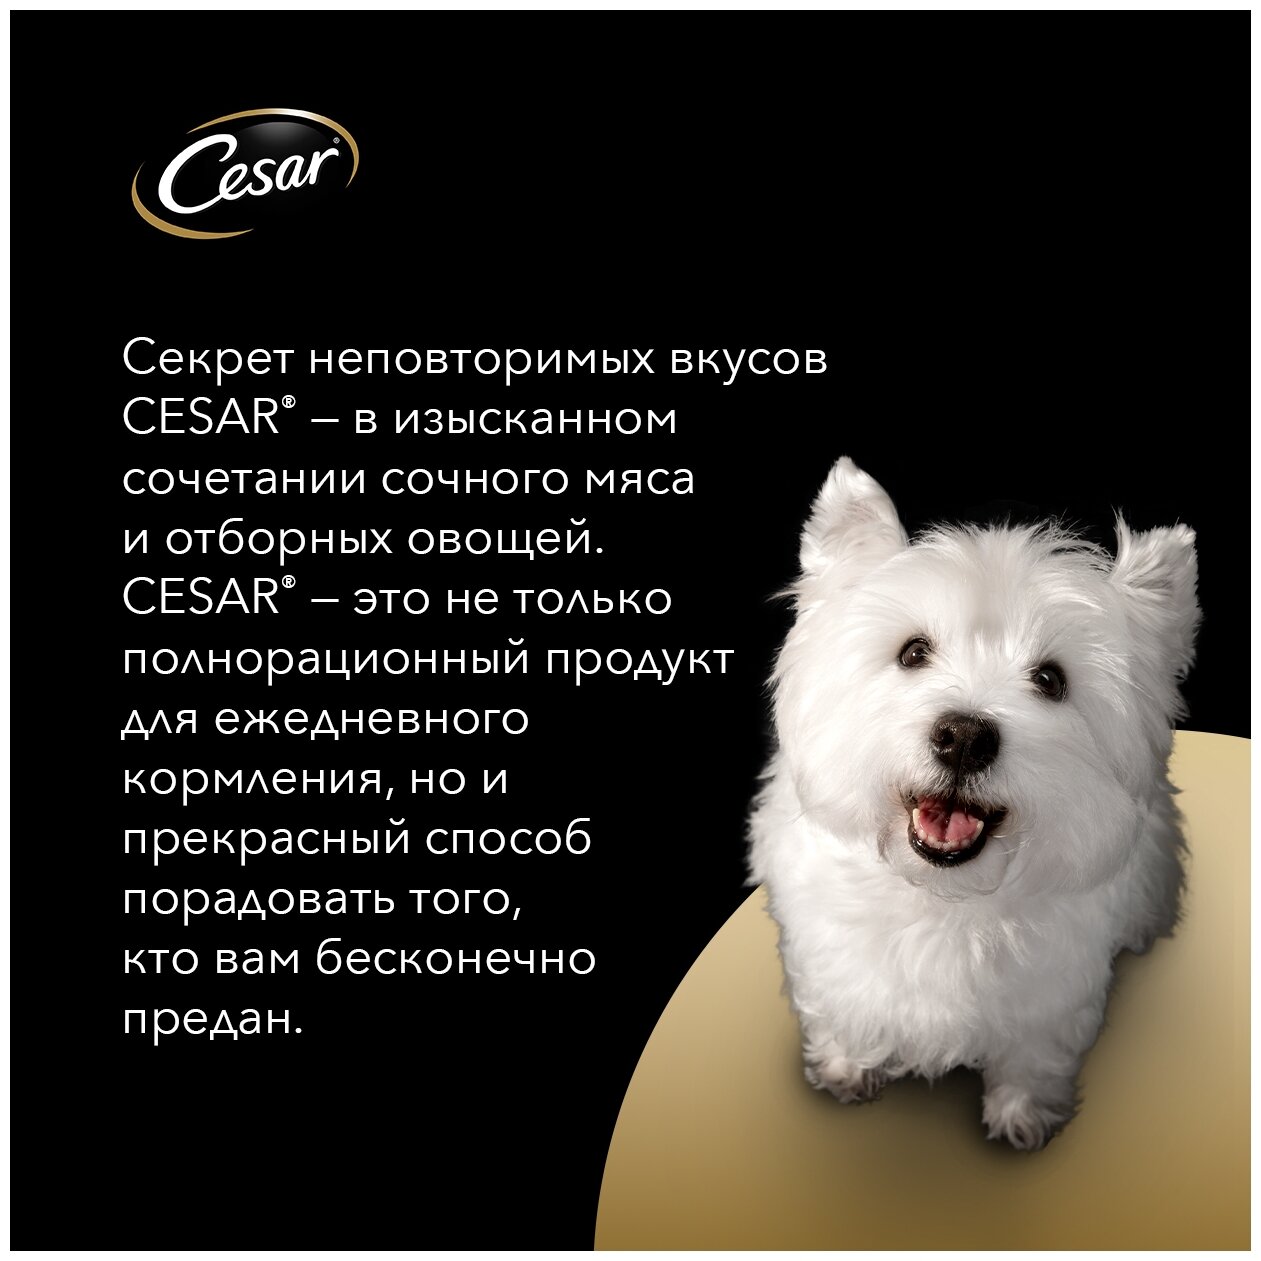 Cesar Паучи для взрослых собак с говядиной кроликом и шпинатом в соусе 85г 10222843 0,085 кг 43489 (2 шт)